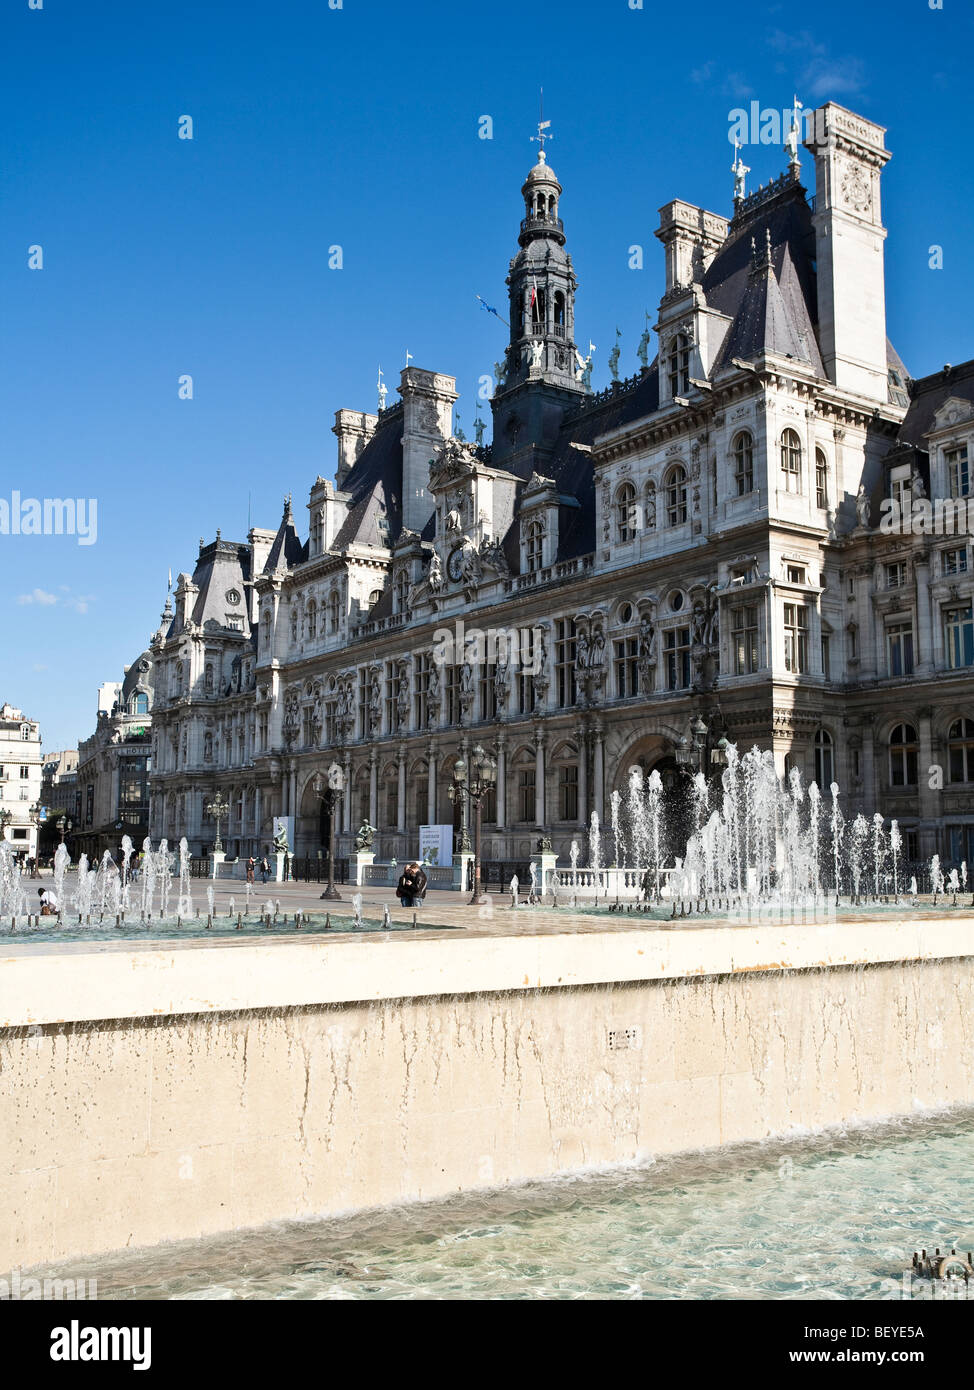 Hôtel de Ville l'hôtel de ville de Paris est une reconstruction du xixe siècle. L'original a été brûlé à la Commune de Paris 1871 Banque D'Images